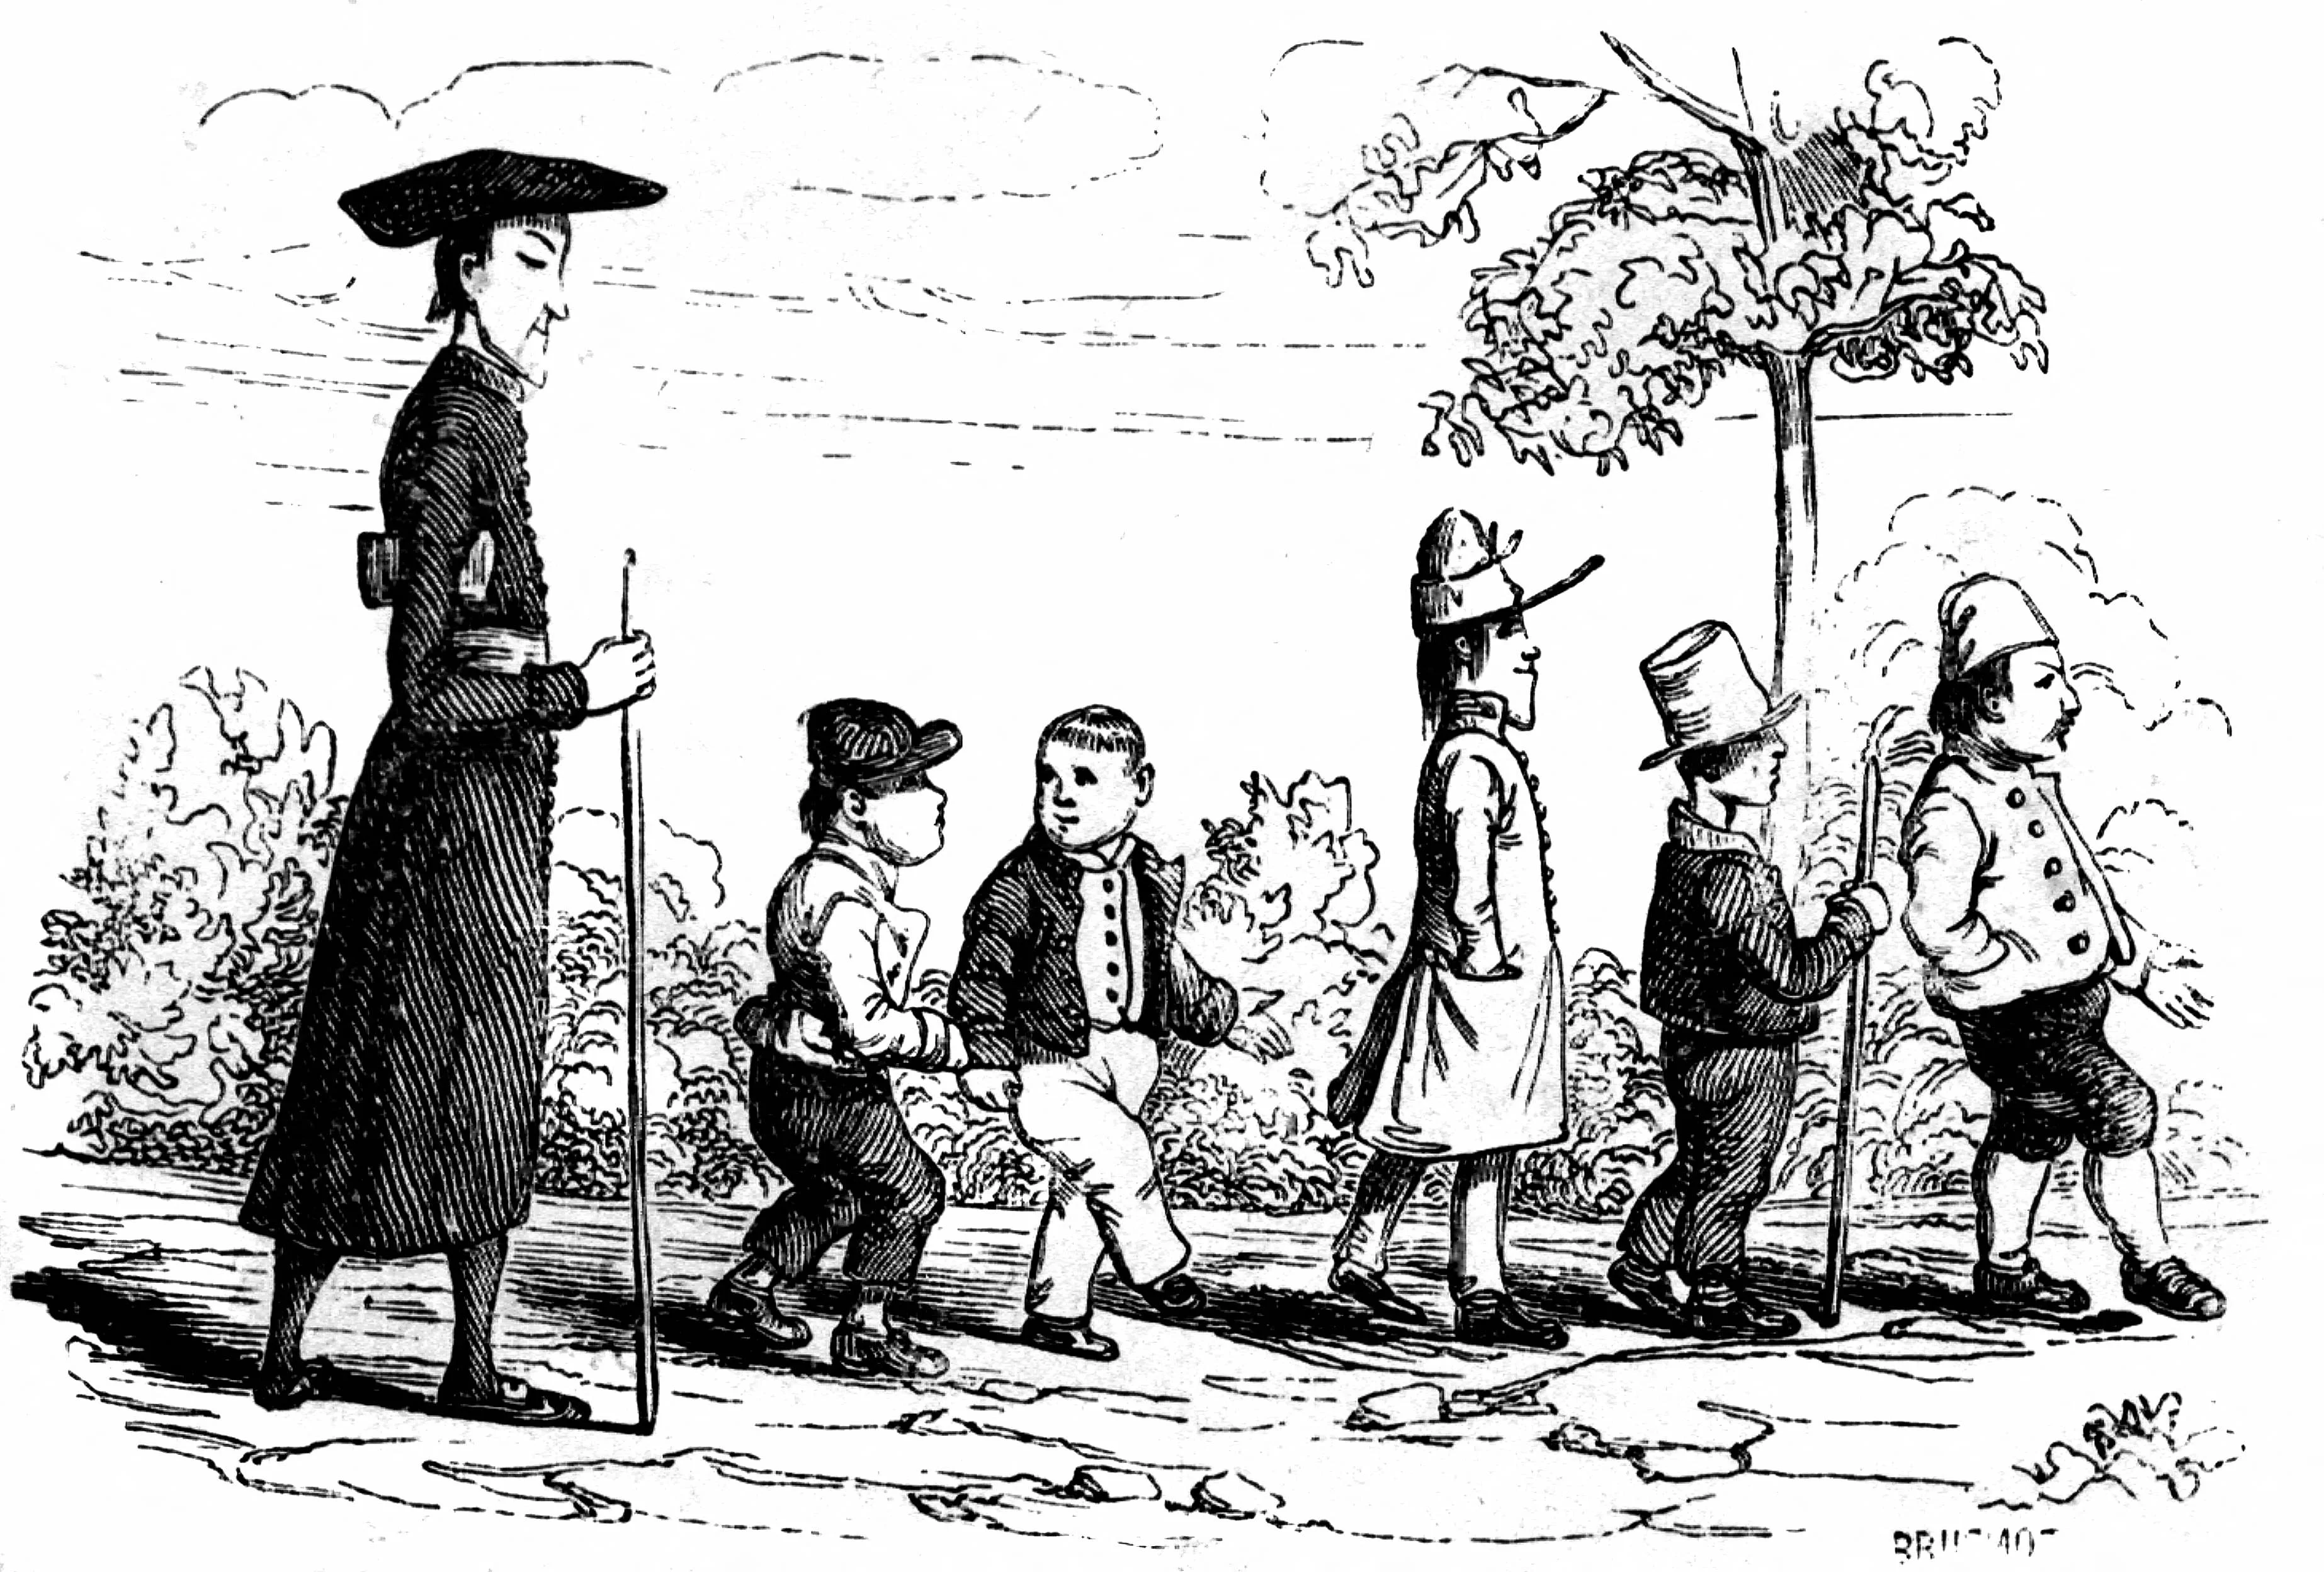 法語漫畫有其風格寫實但精神上黑色幽默的特性。圖為Rodolphe Töper (1799-1846) 的素描凹版印刷。（攝影：©Collection Roger-Viollet / Roger-Viollet via AFP）